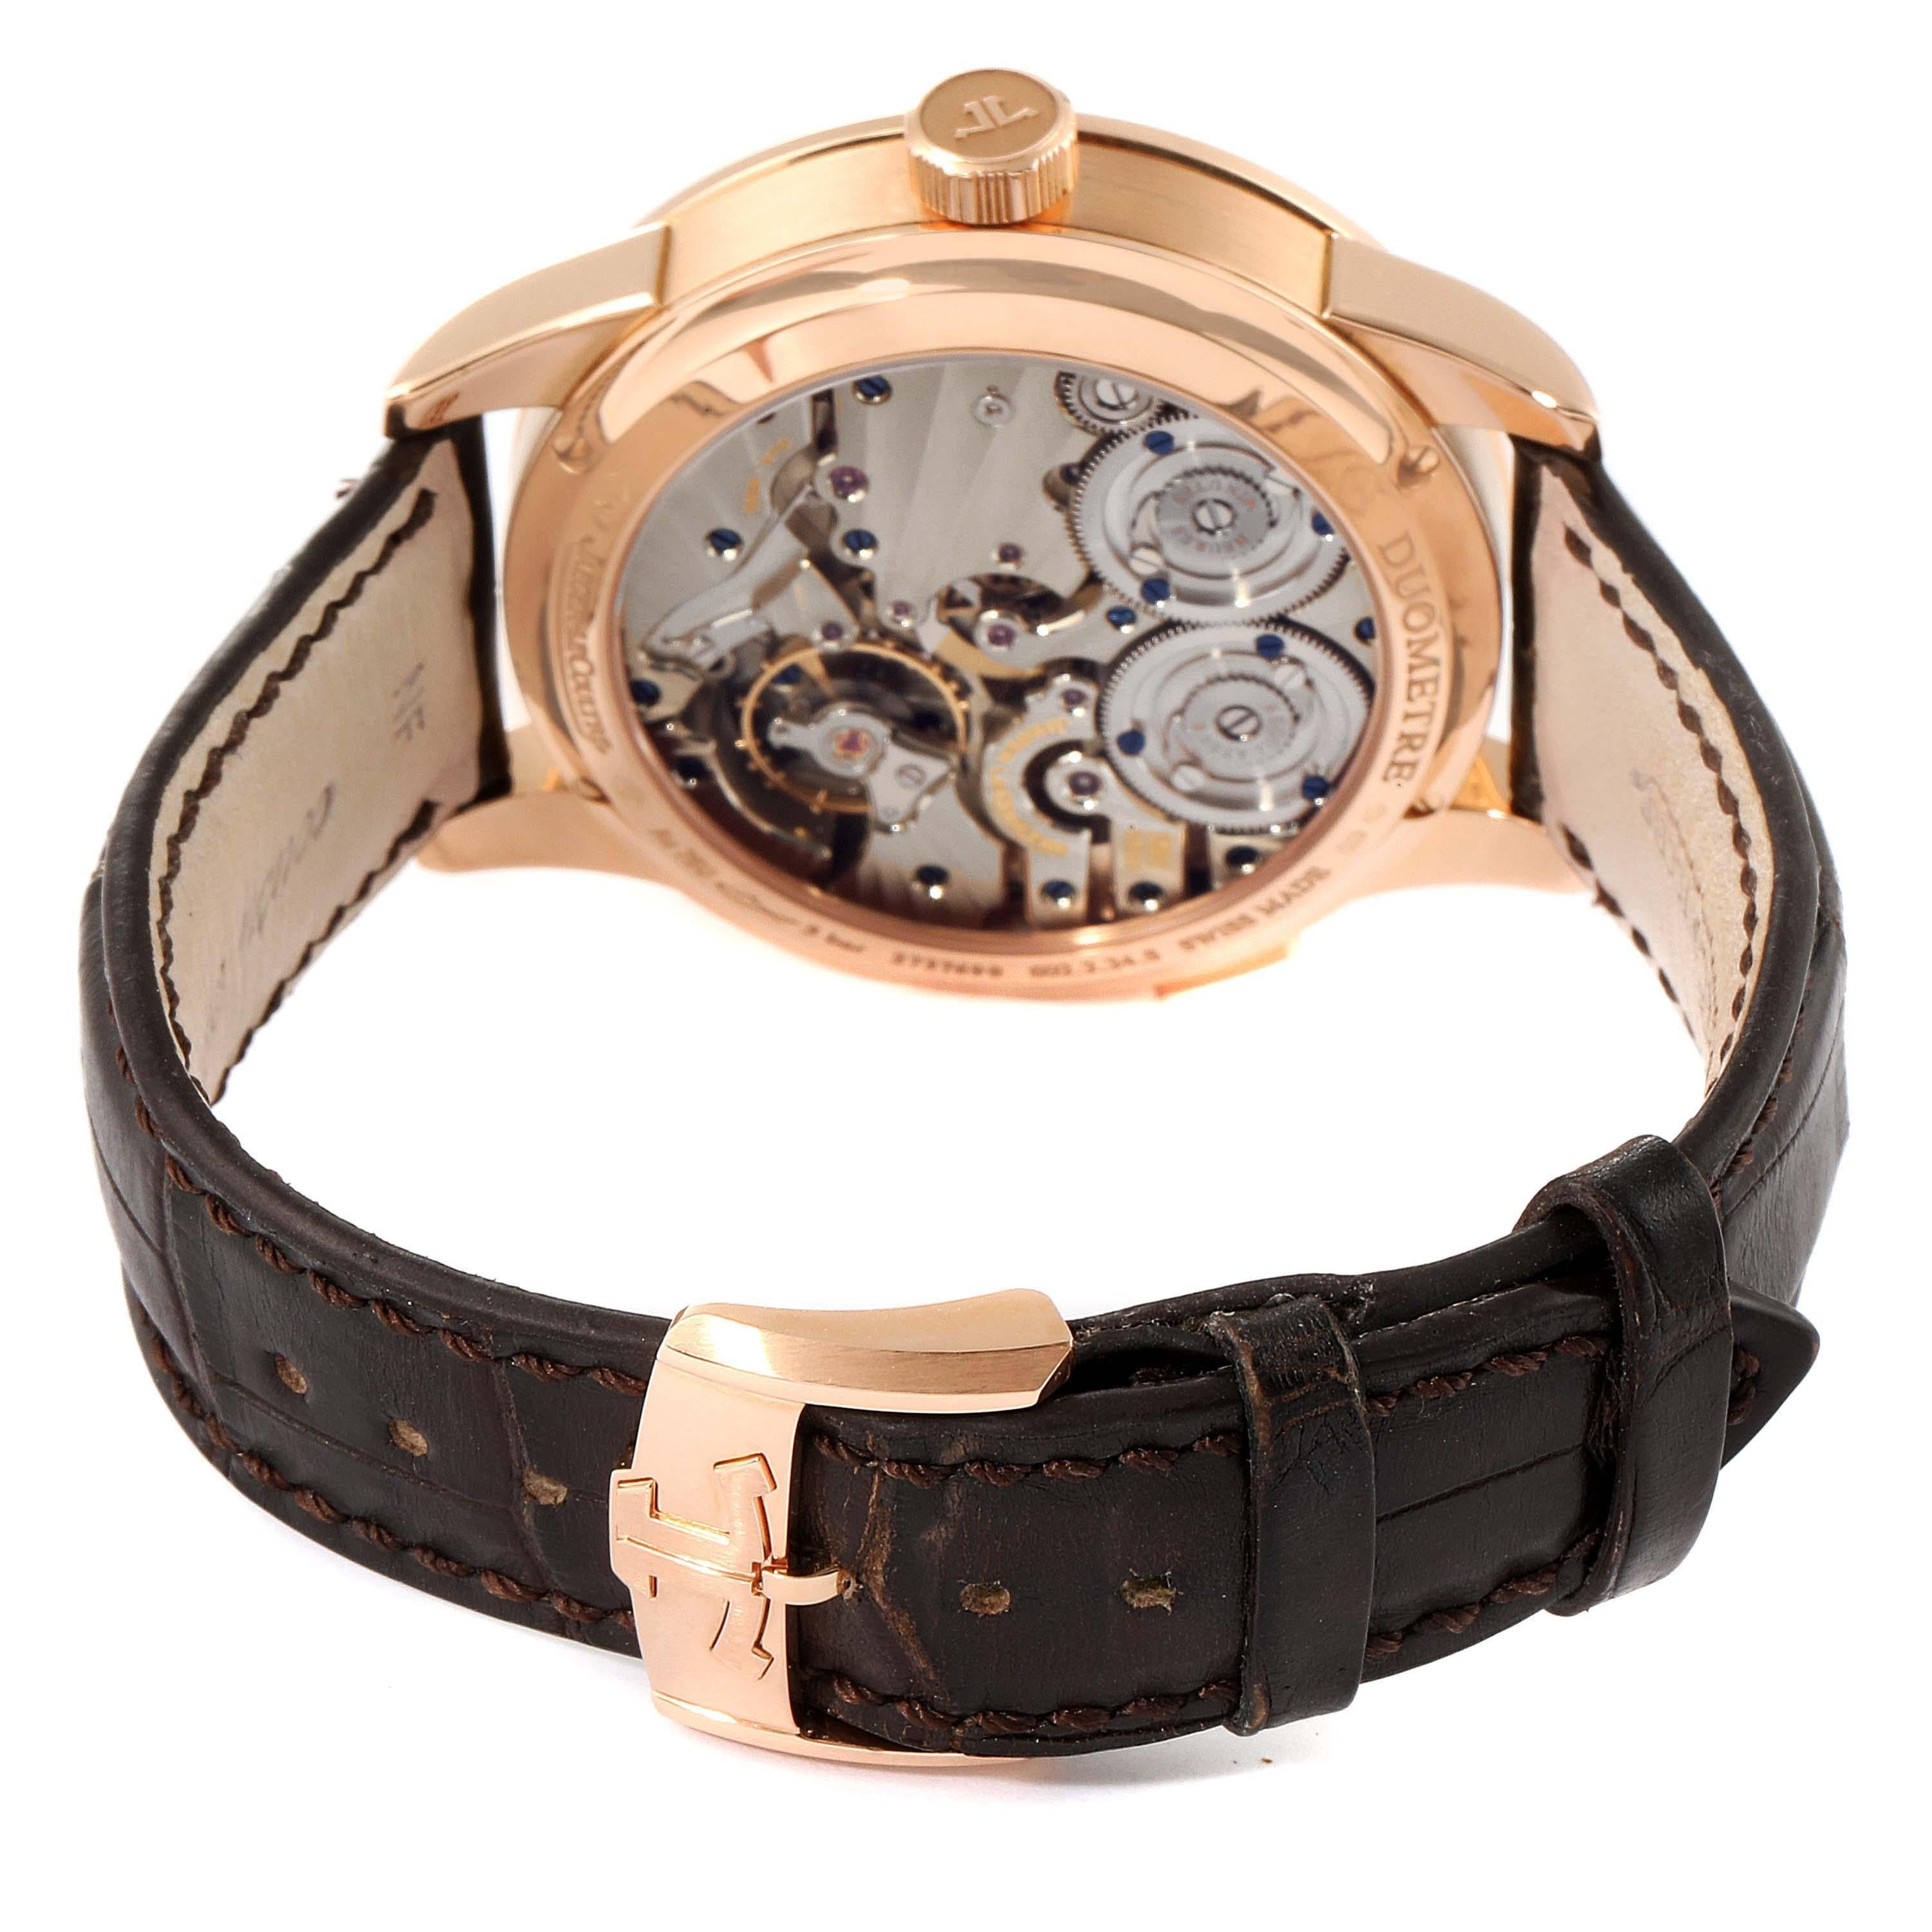 Jaeger Lecoultre Duometre Quantieme Lunaire Rose Gold Watch Q6042421 For Sale 1